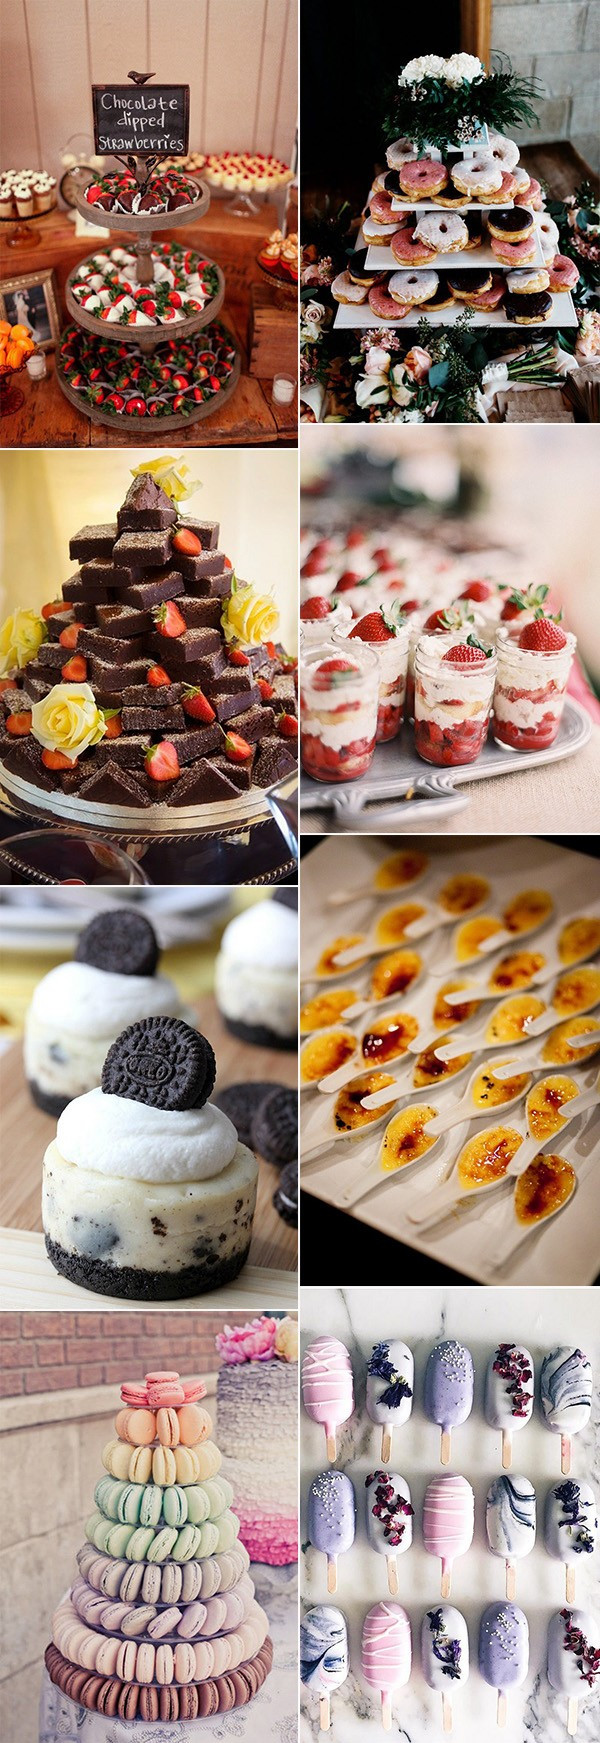 Unique Wedding Desserts Ideas
 15 Sweet Wedding Dessert Ideas Your Guests Will Love